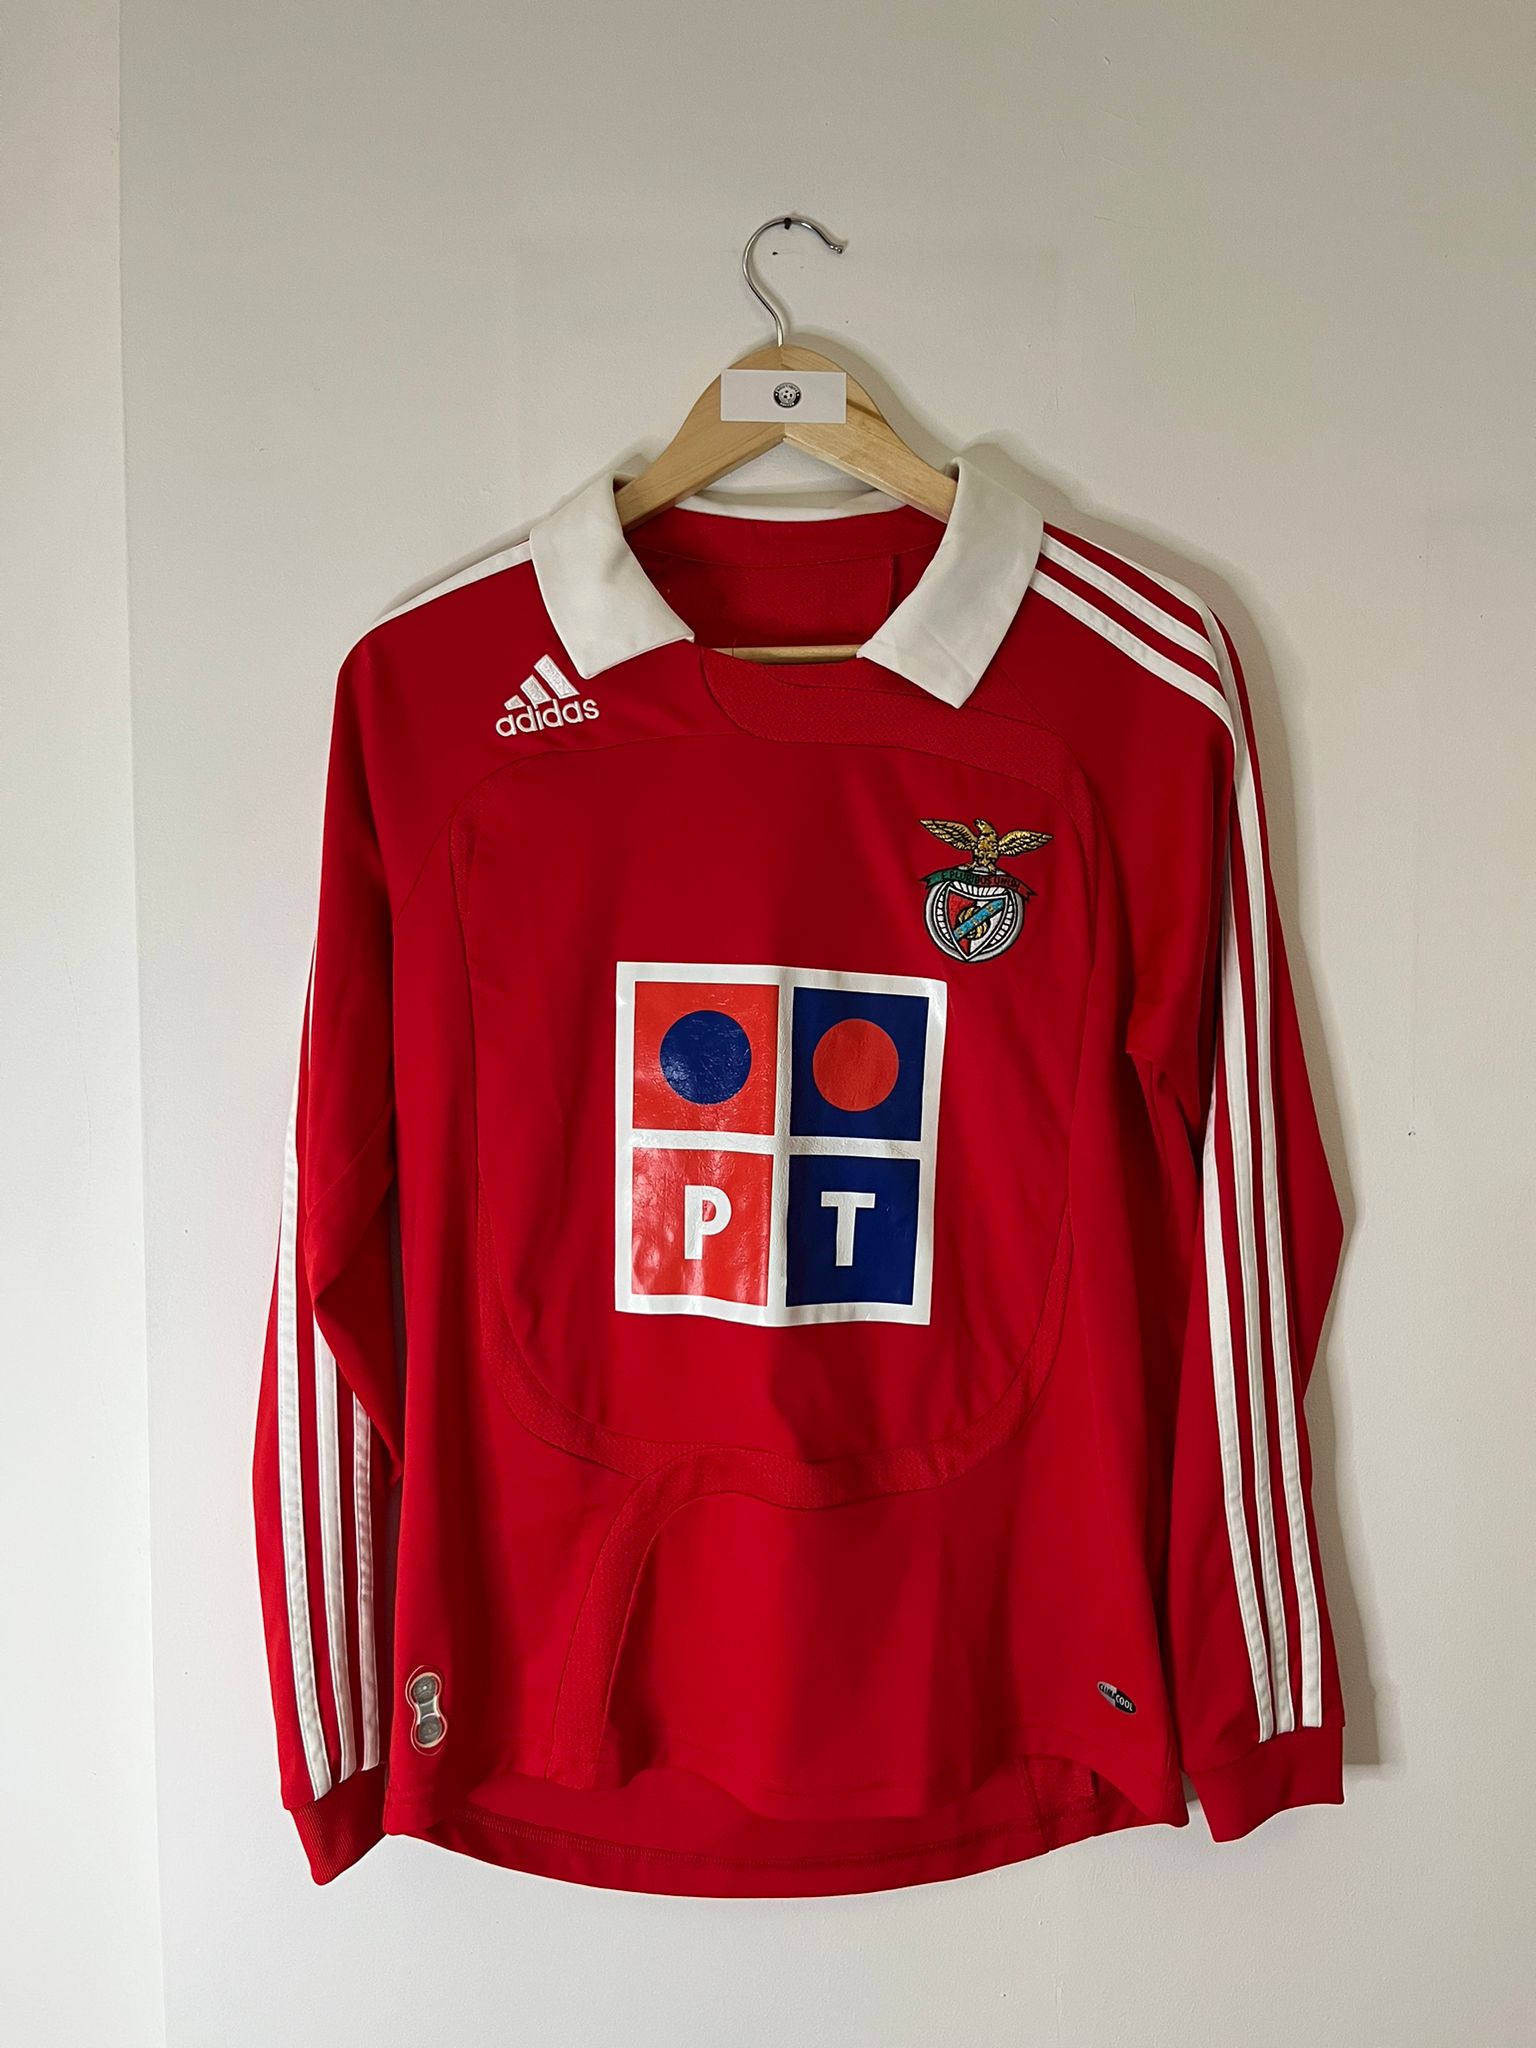 Benfica 2006-07 kit